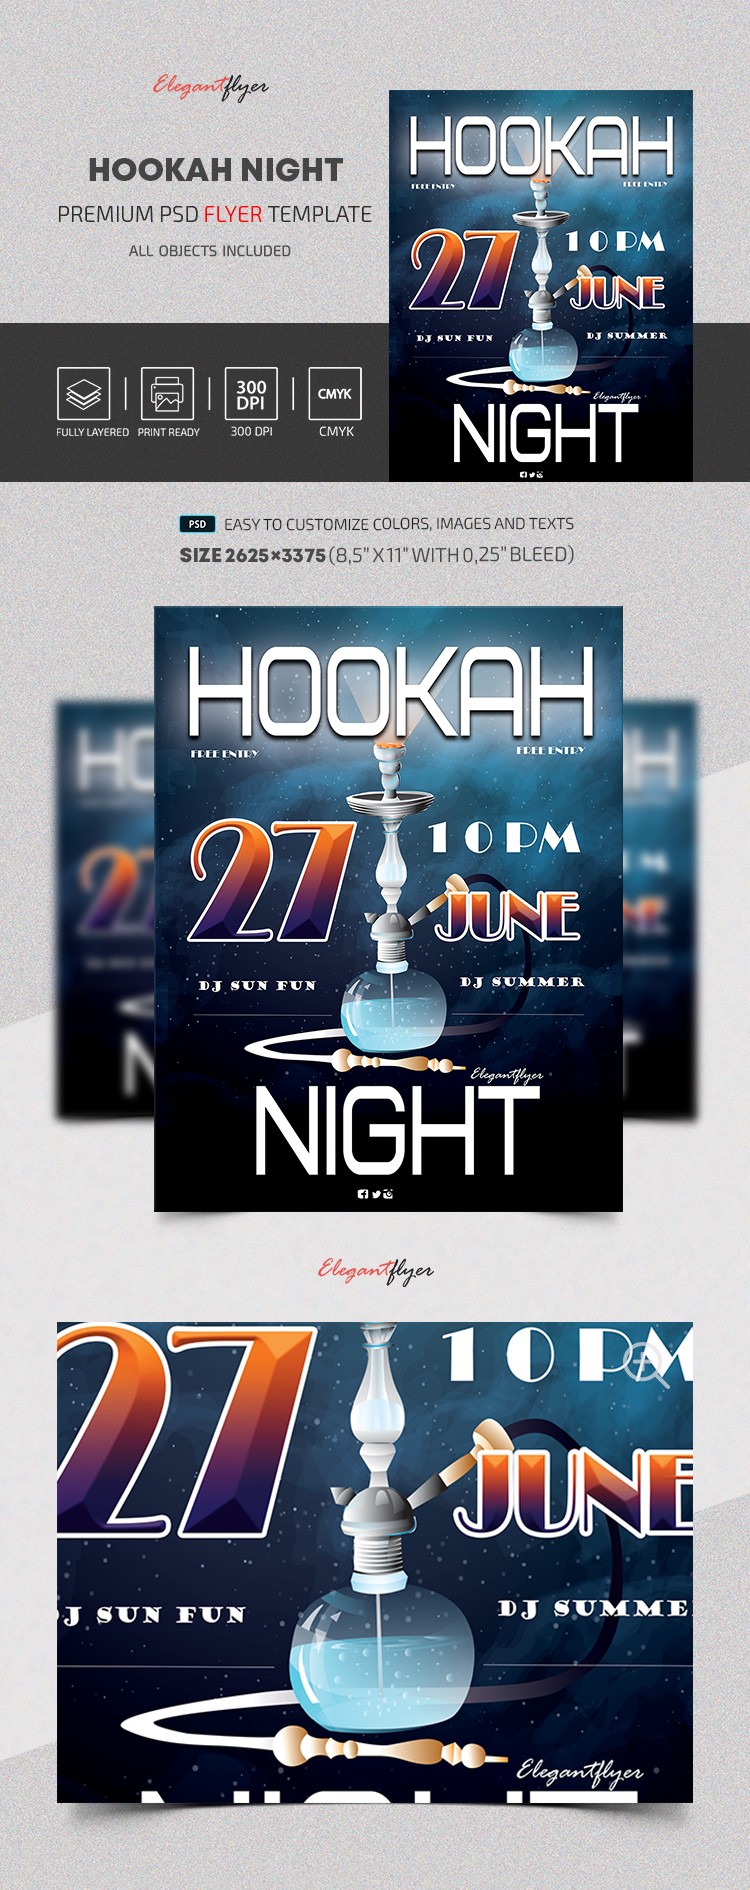 Noche de hookah by ElegantFlyer